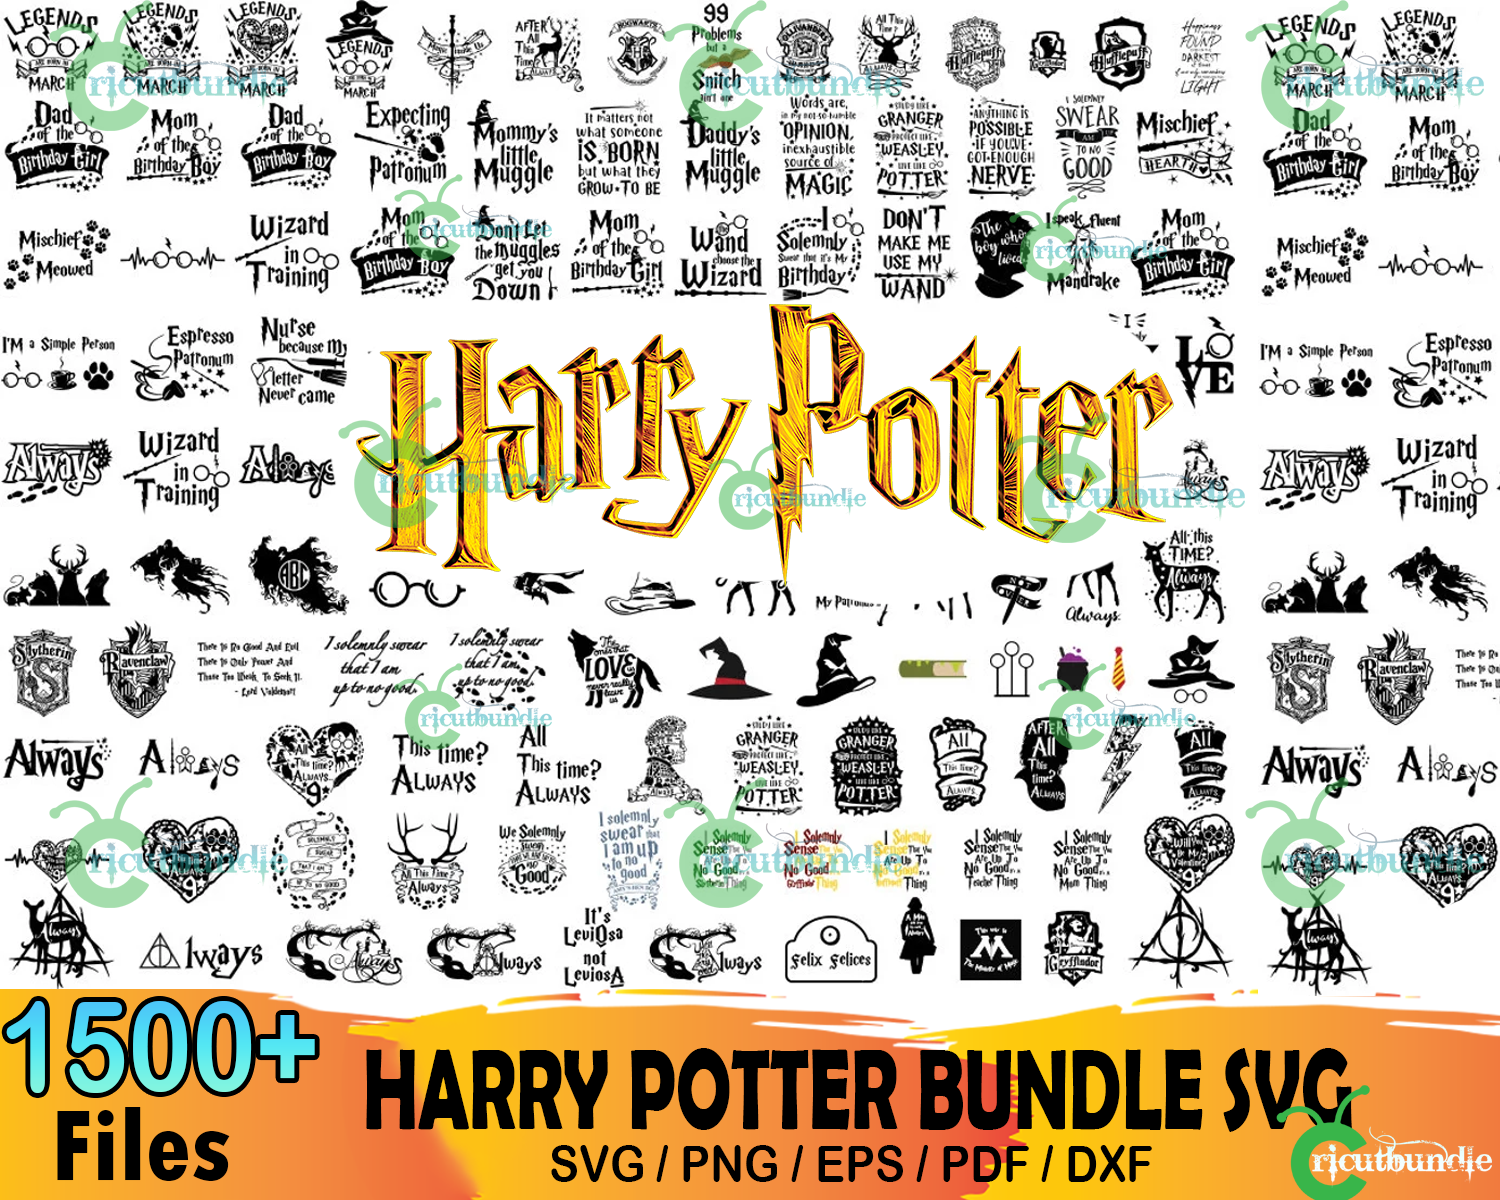 4600 Harry Potter Mega Bundle Svg